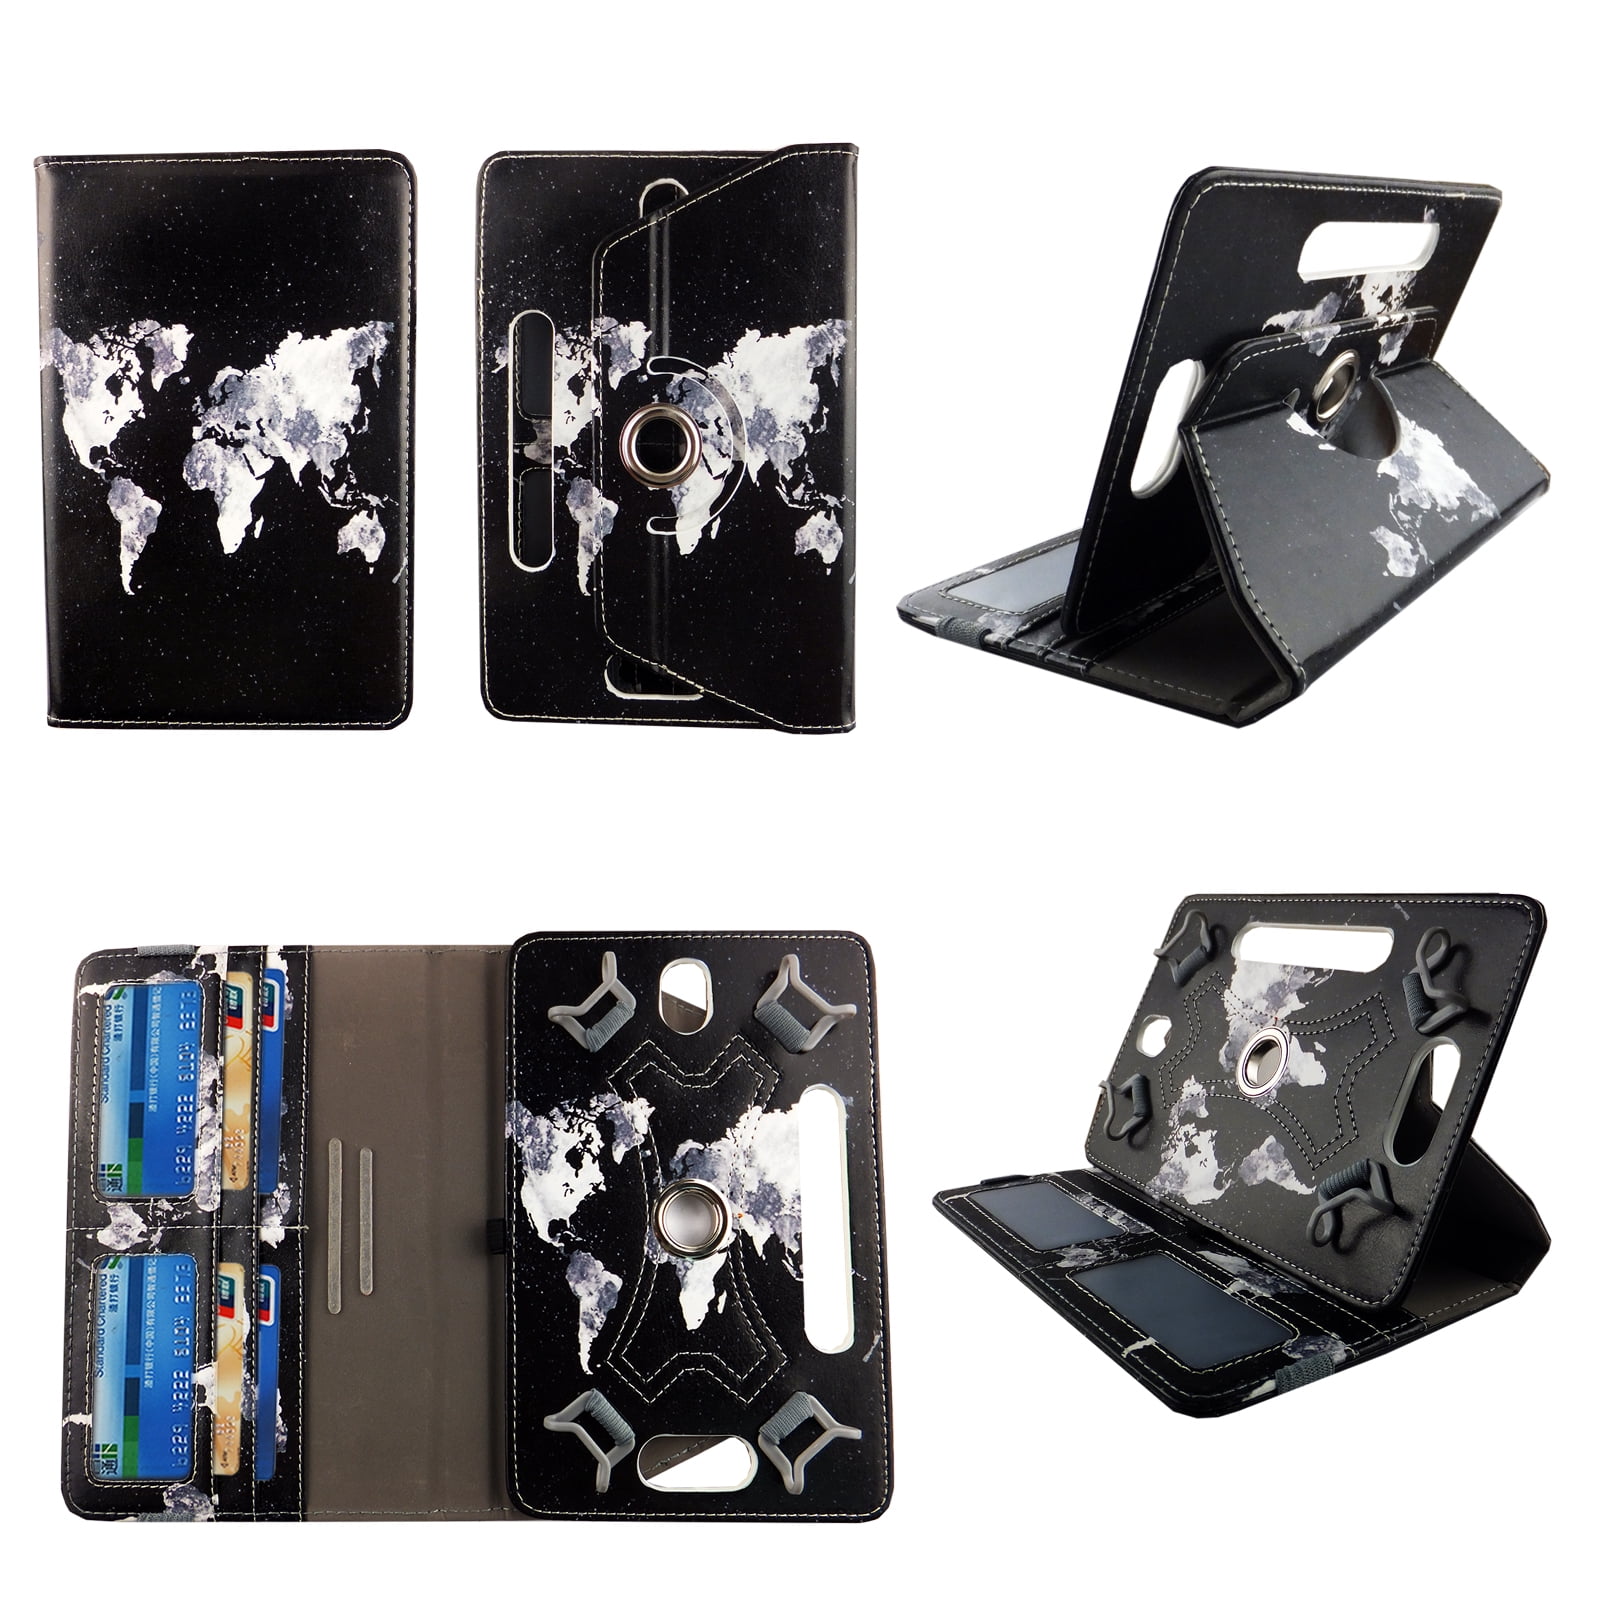 World Design tablet case 8 inch for Zeki TBQG 8 8inch 